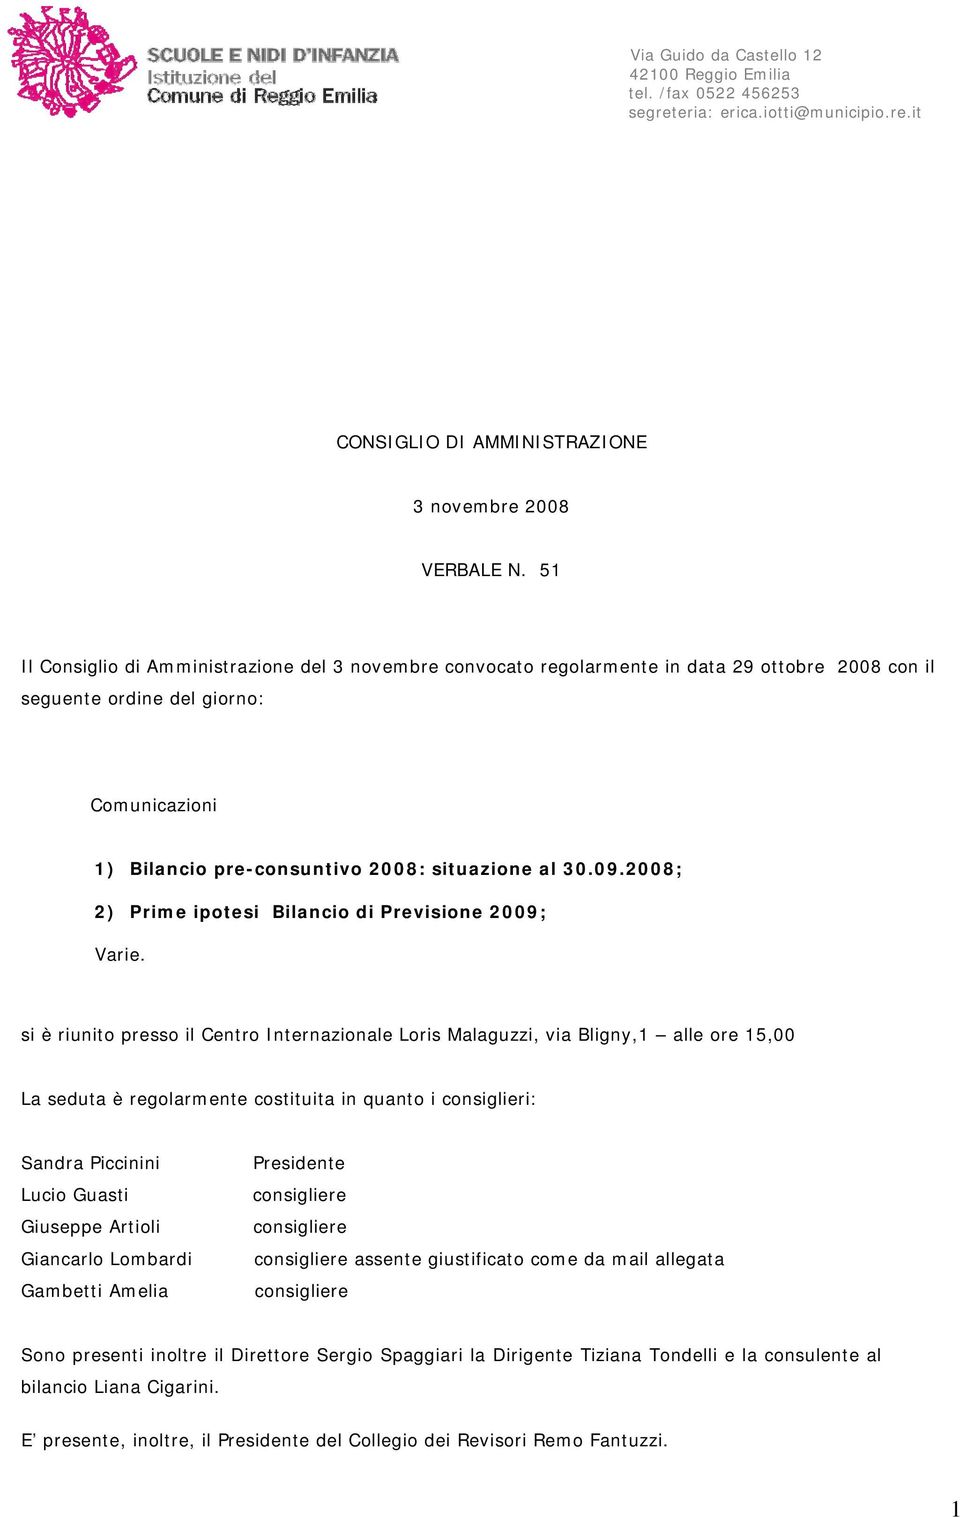 2008; 2) Prime ipotesi Bilancio di Previsione 2009; Varie.